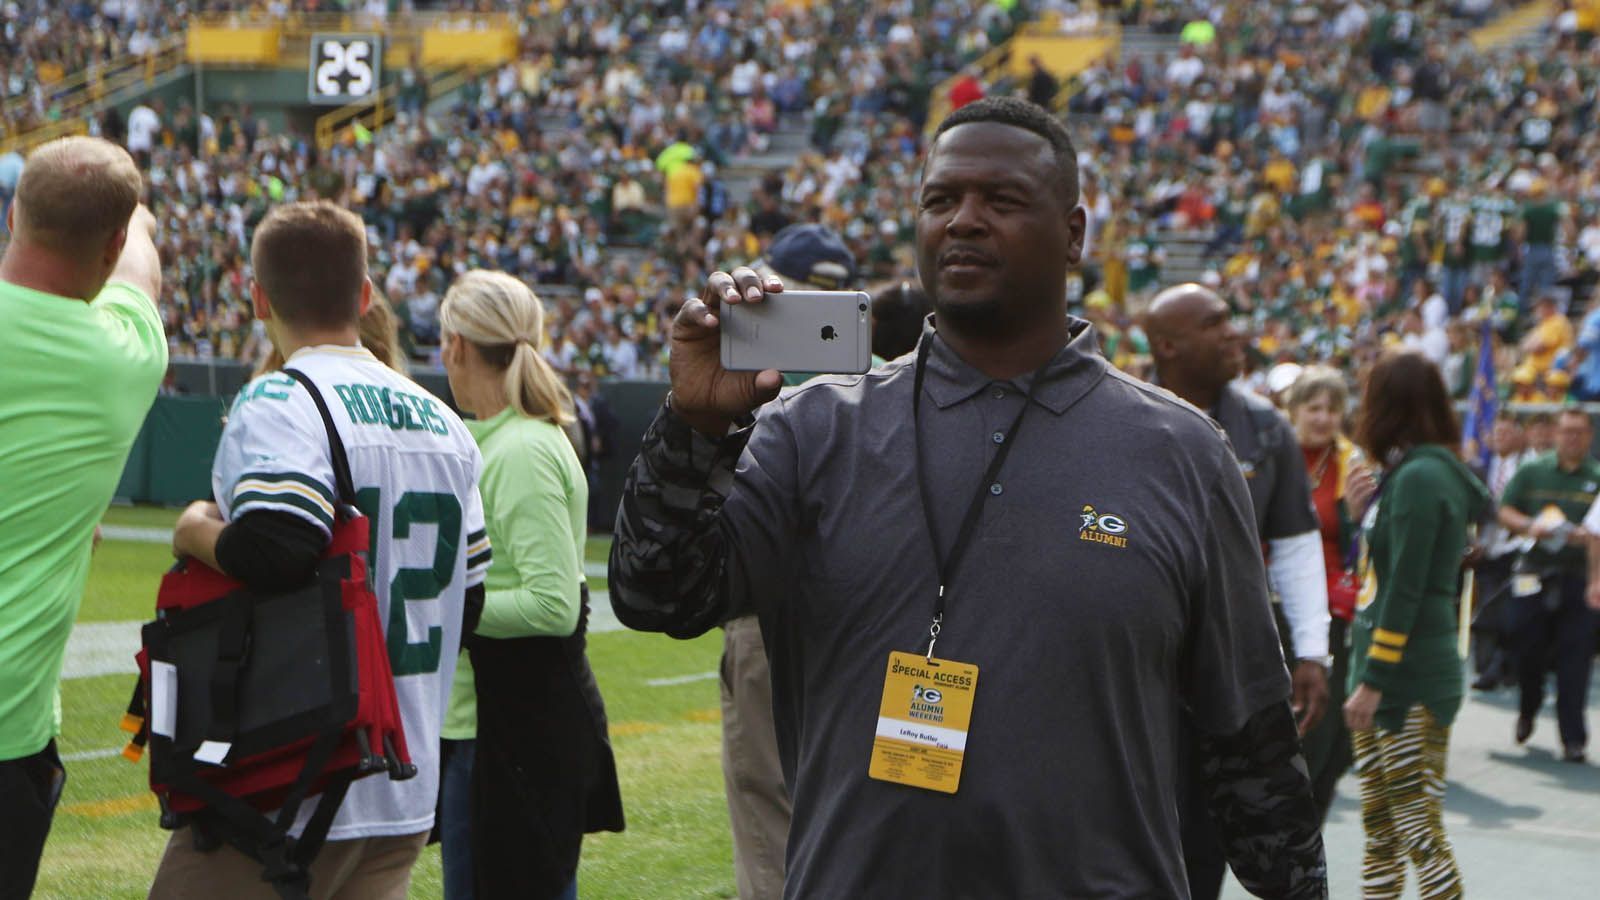 
                <strong>LeRoy Butler</strong><br>
                Der ehemalige Safety der Green Bay Packers (1990-2001) gewann mit den Packers 1996 den Super Bowl. Außerdem gilt er als Erfinder des "Lambeau Leap", bei dem ein Spieler nach einem Touchdown in die Menge springt. 
              